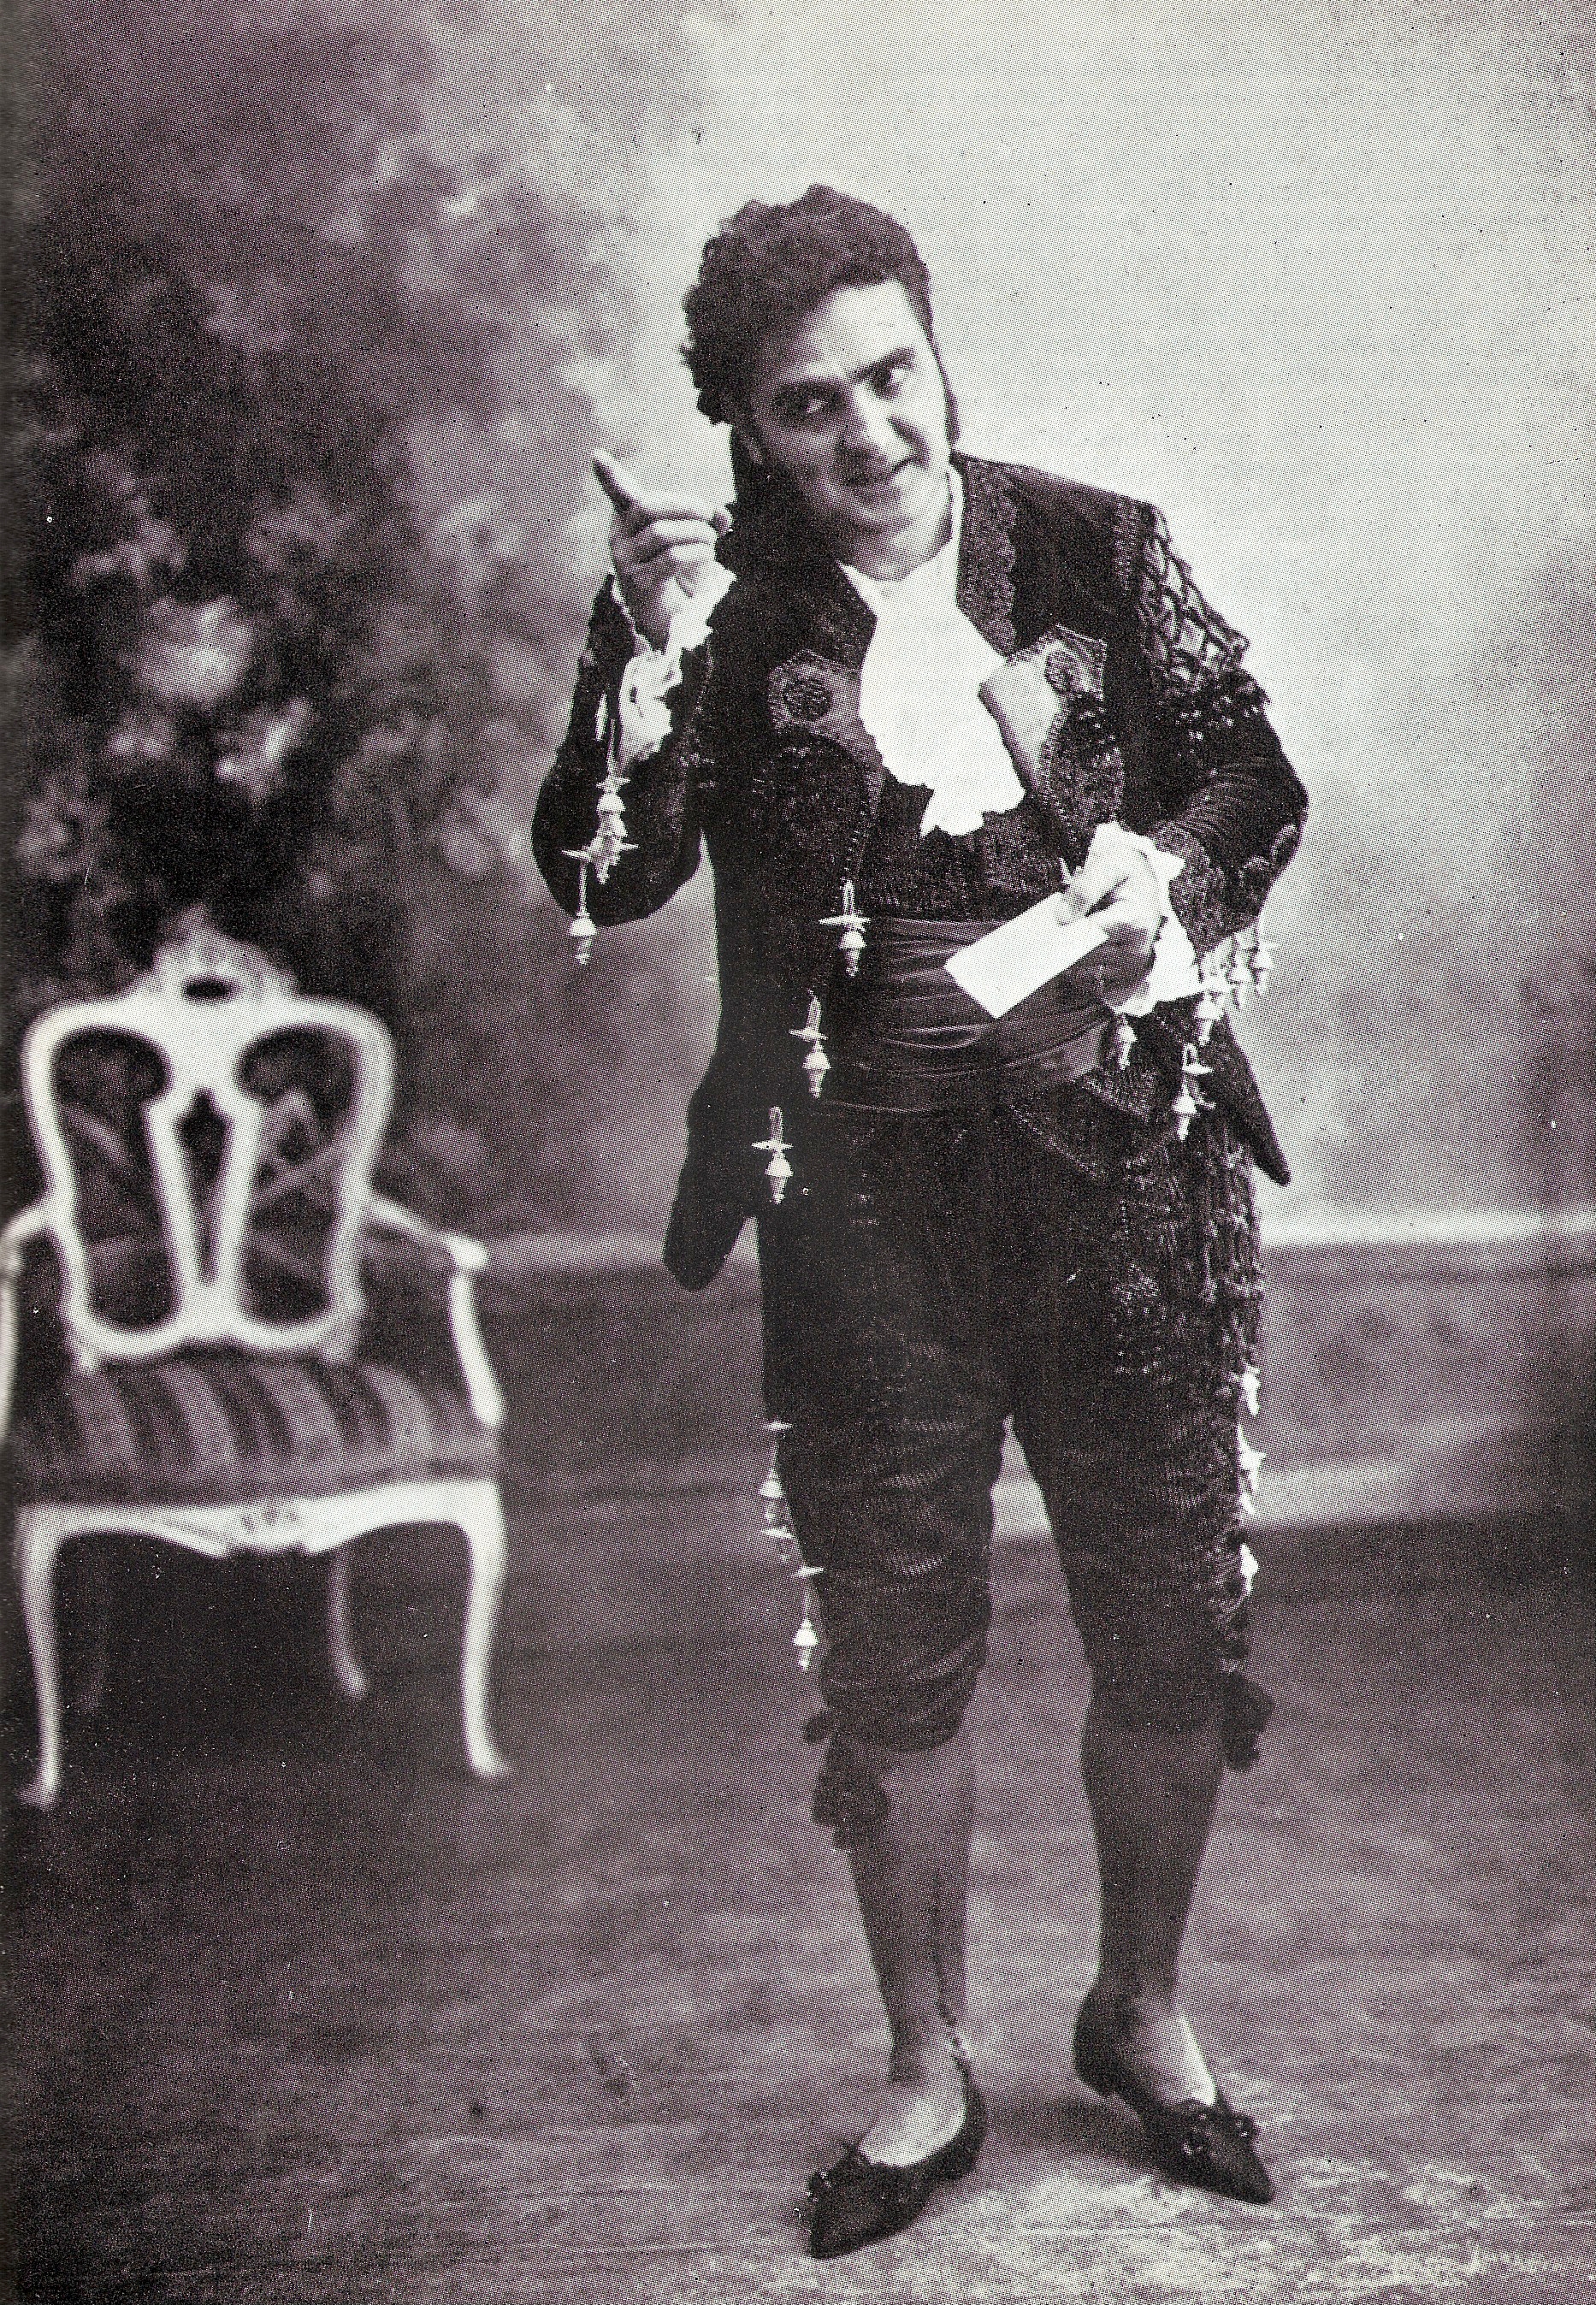 Riccardo Stracciari interpreta Figaro ne “Il Barbiere di Siviglia” di G. Rossini (immagine di pubblico dominio in quanto foto semplice a carattere non artistico scattata in Italia oltre 20 anni fa)